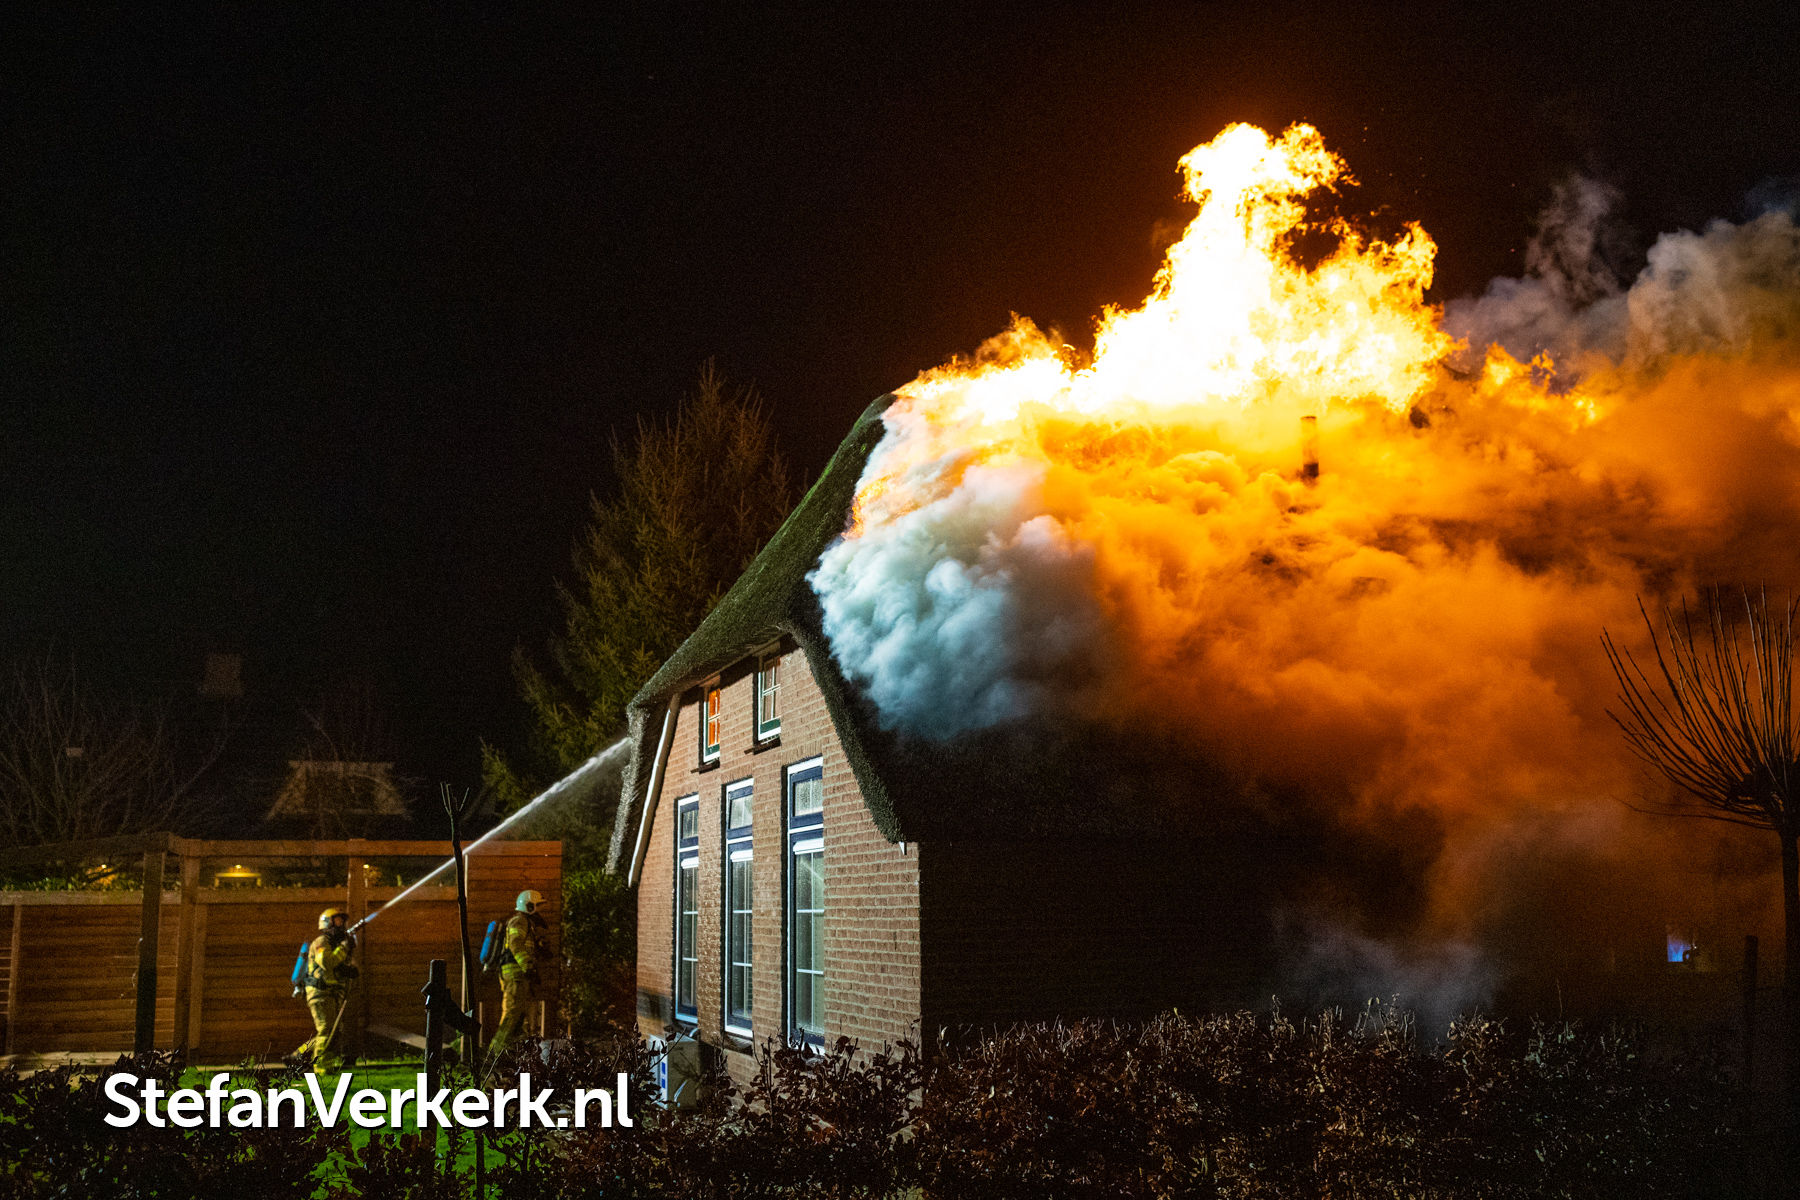 aanraken herberg Hamburger Uitslaande brand verwoest rietgedekte woning Vierhuizenweg Oldebroek -  Nieuws - Stefan Verkerk Fotografie & Webdesign